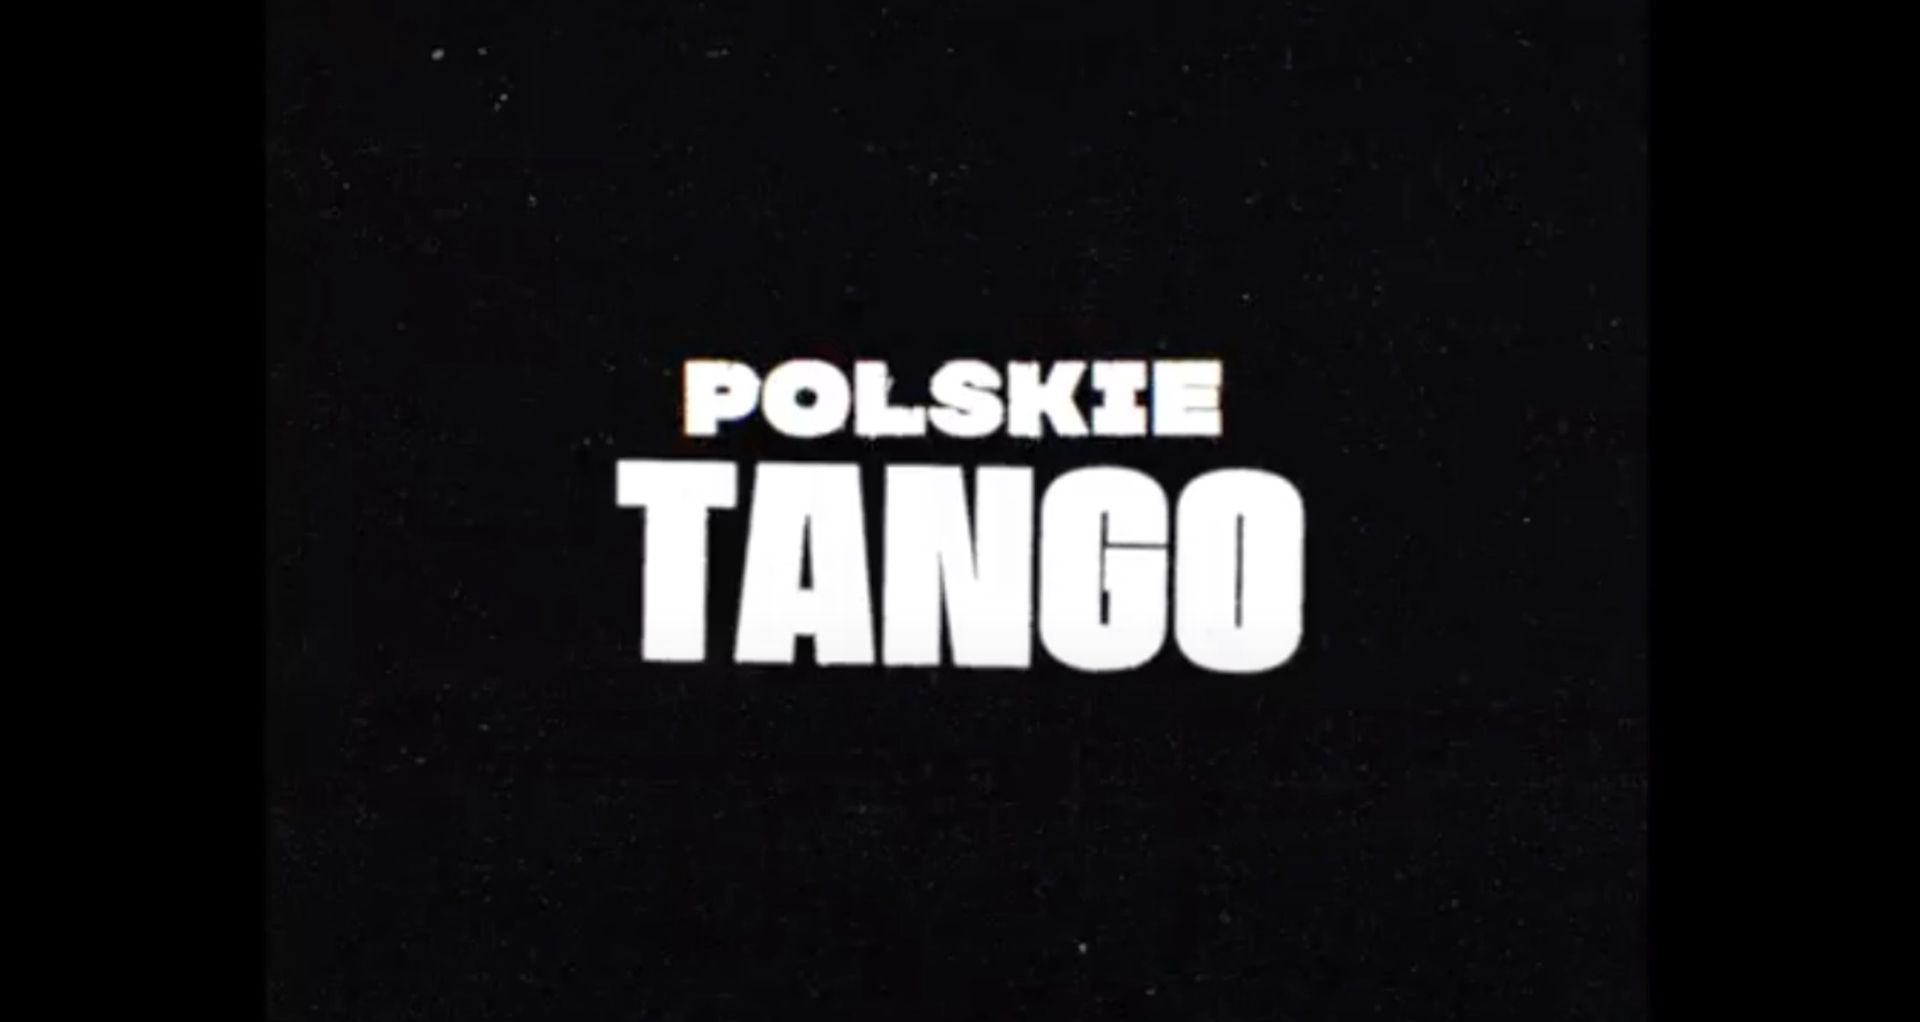 Nowy Taco Hemingwaya - "Polskie tango" niesie się w sieci. Posłuchaj zapowiedzi płyty "Jarmark"